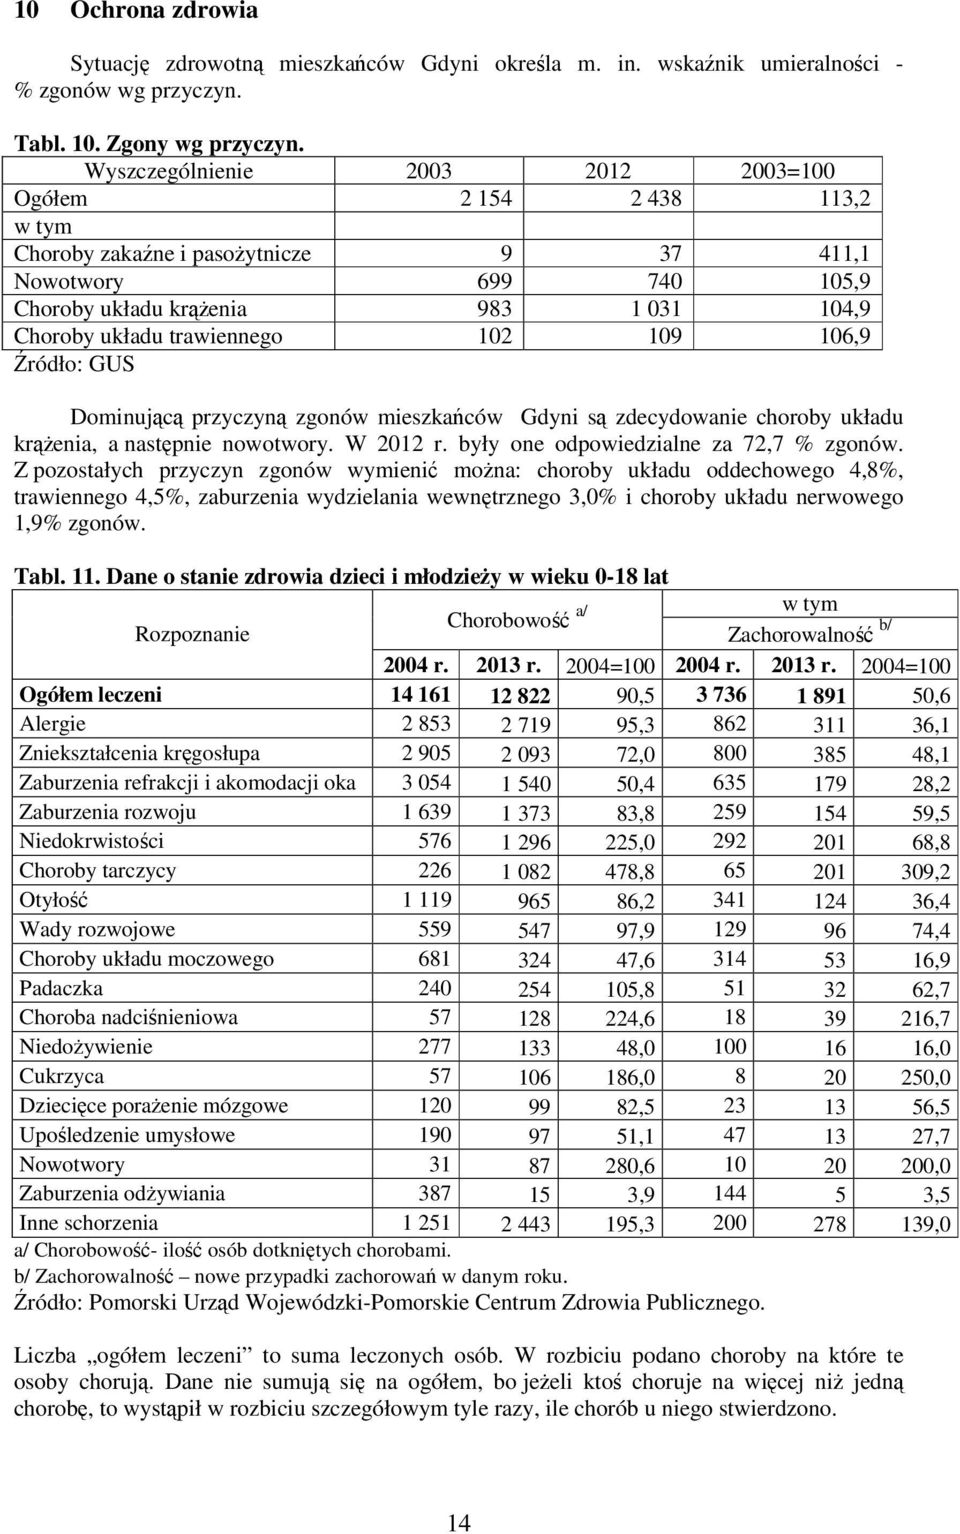 102 109 106,9 Źródło: GUS Dominującą przyczyną zgonów mieszkańców Gdyni są zdecydowanie choroby układu krążenia, a następnie nowotwory. W 2012 r. były one odpowiedzialne za 72,7 % zgonów.